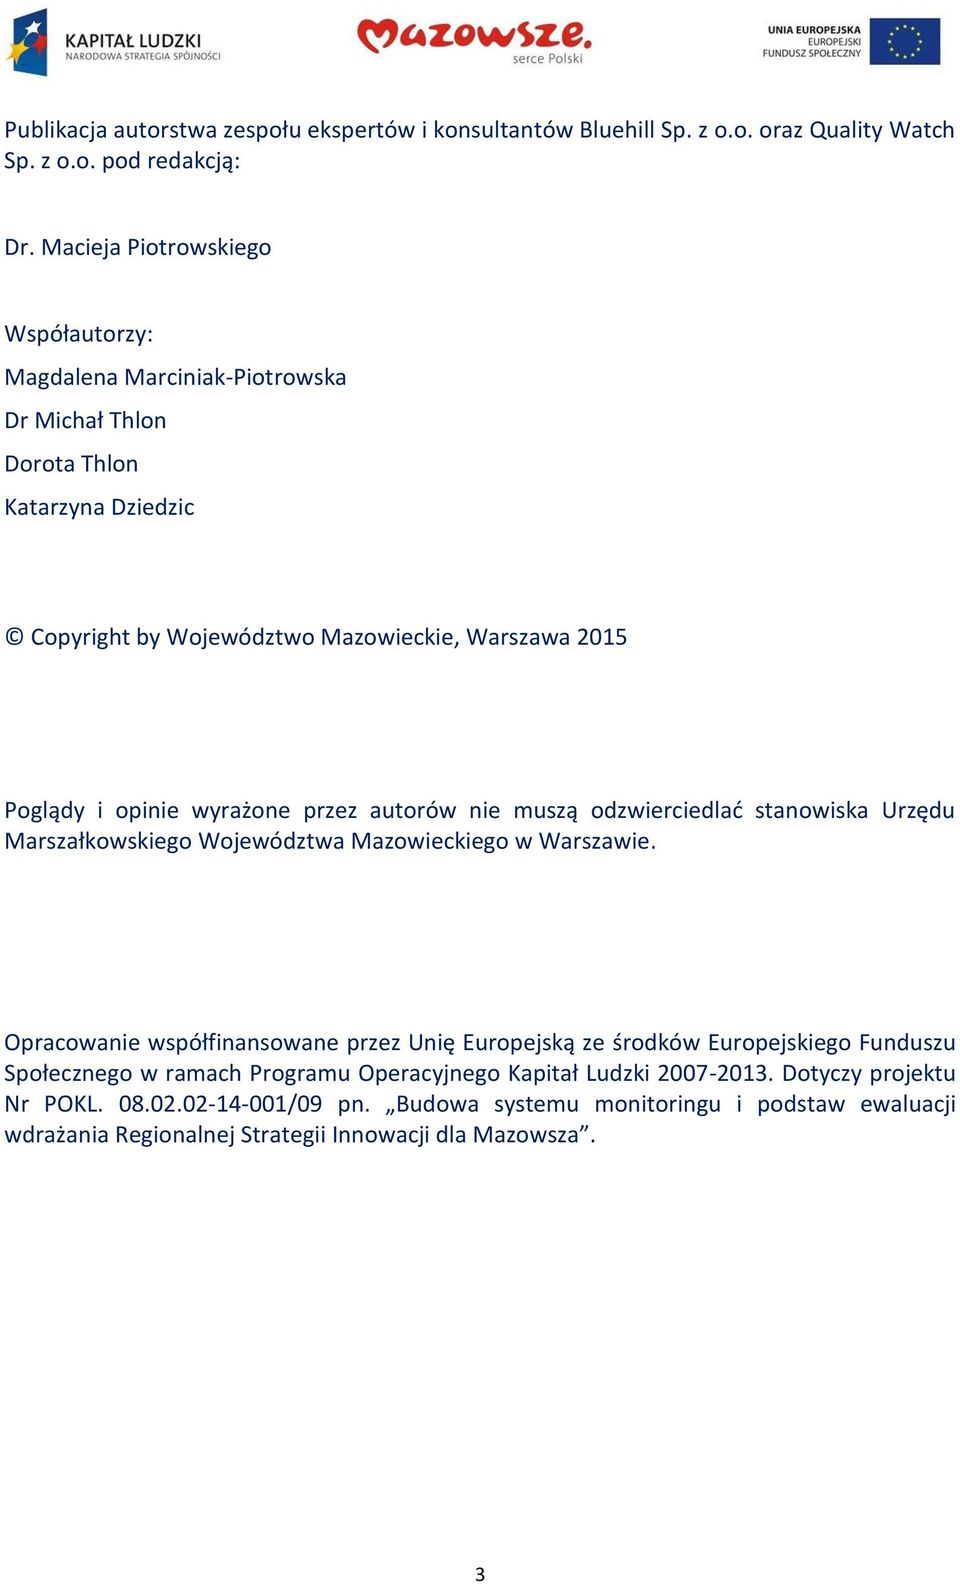 wyrażone przez autorów nie muszą odzwierciedlać stanowiska Urzędu Marszałkowskiego Województwa Mazowieckiego w Warszawie.